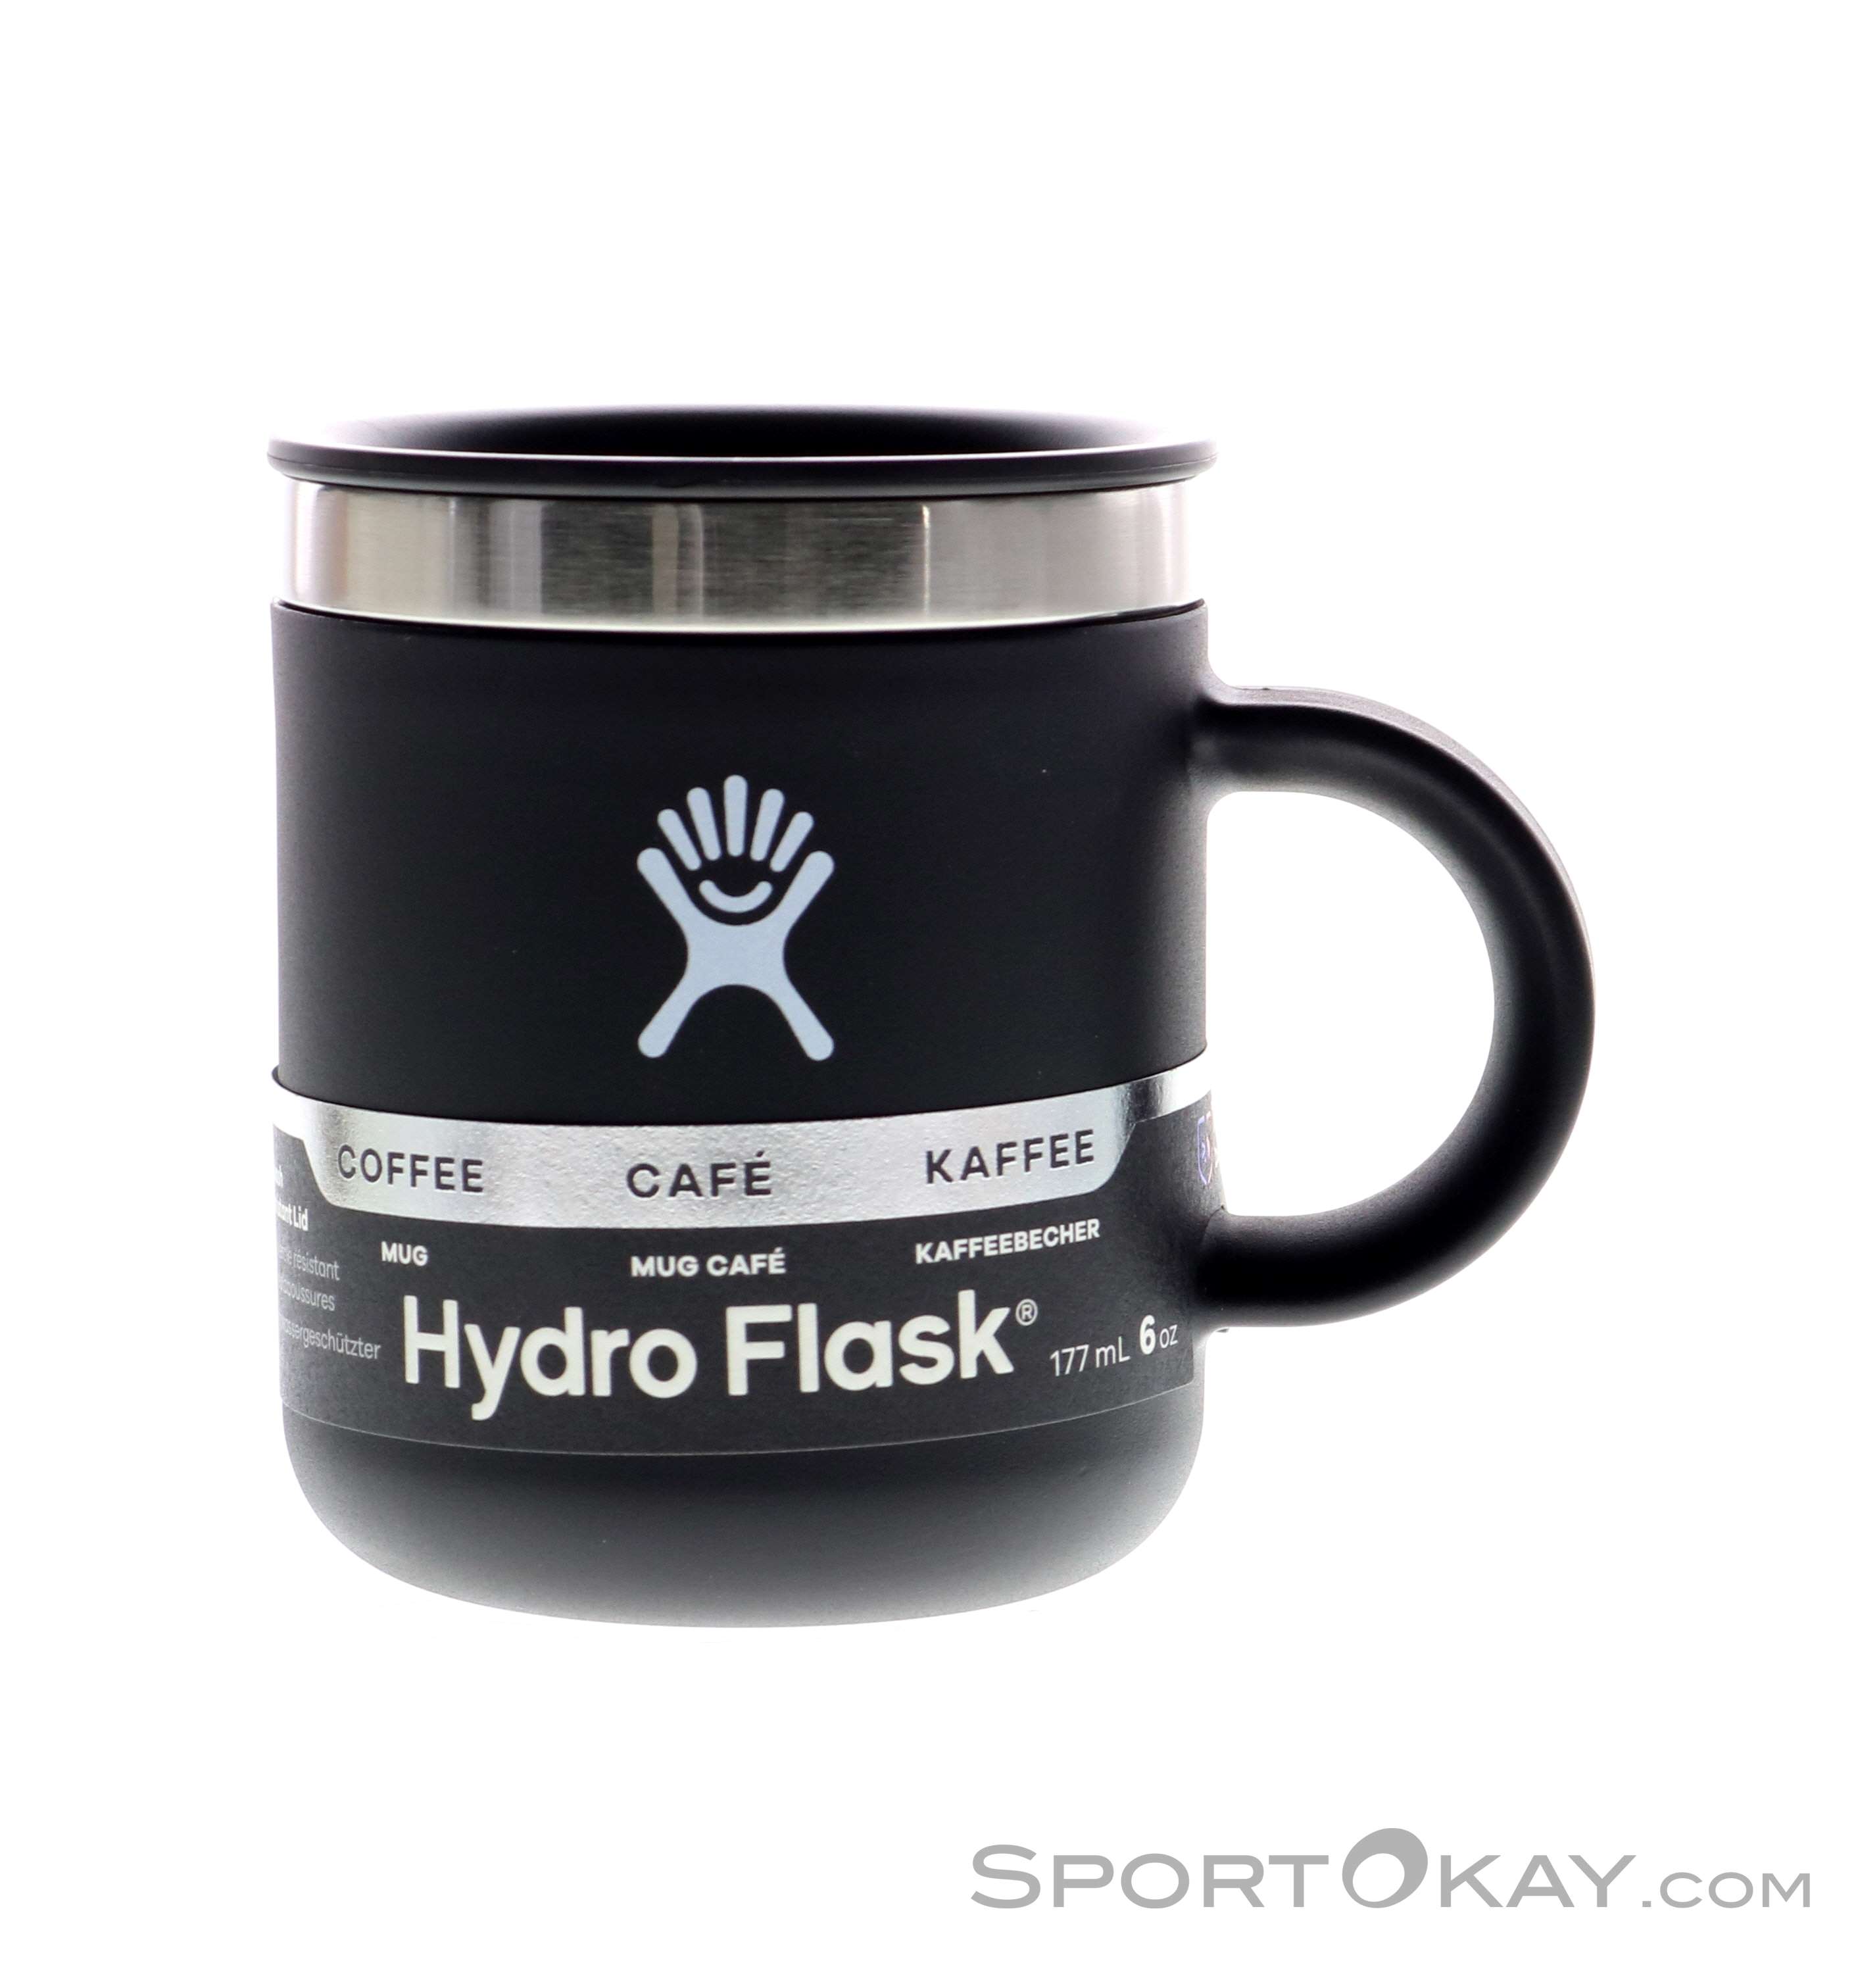 Hydro Flask Birch Coffee Mug 12oz.